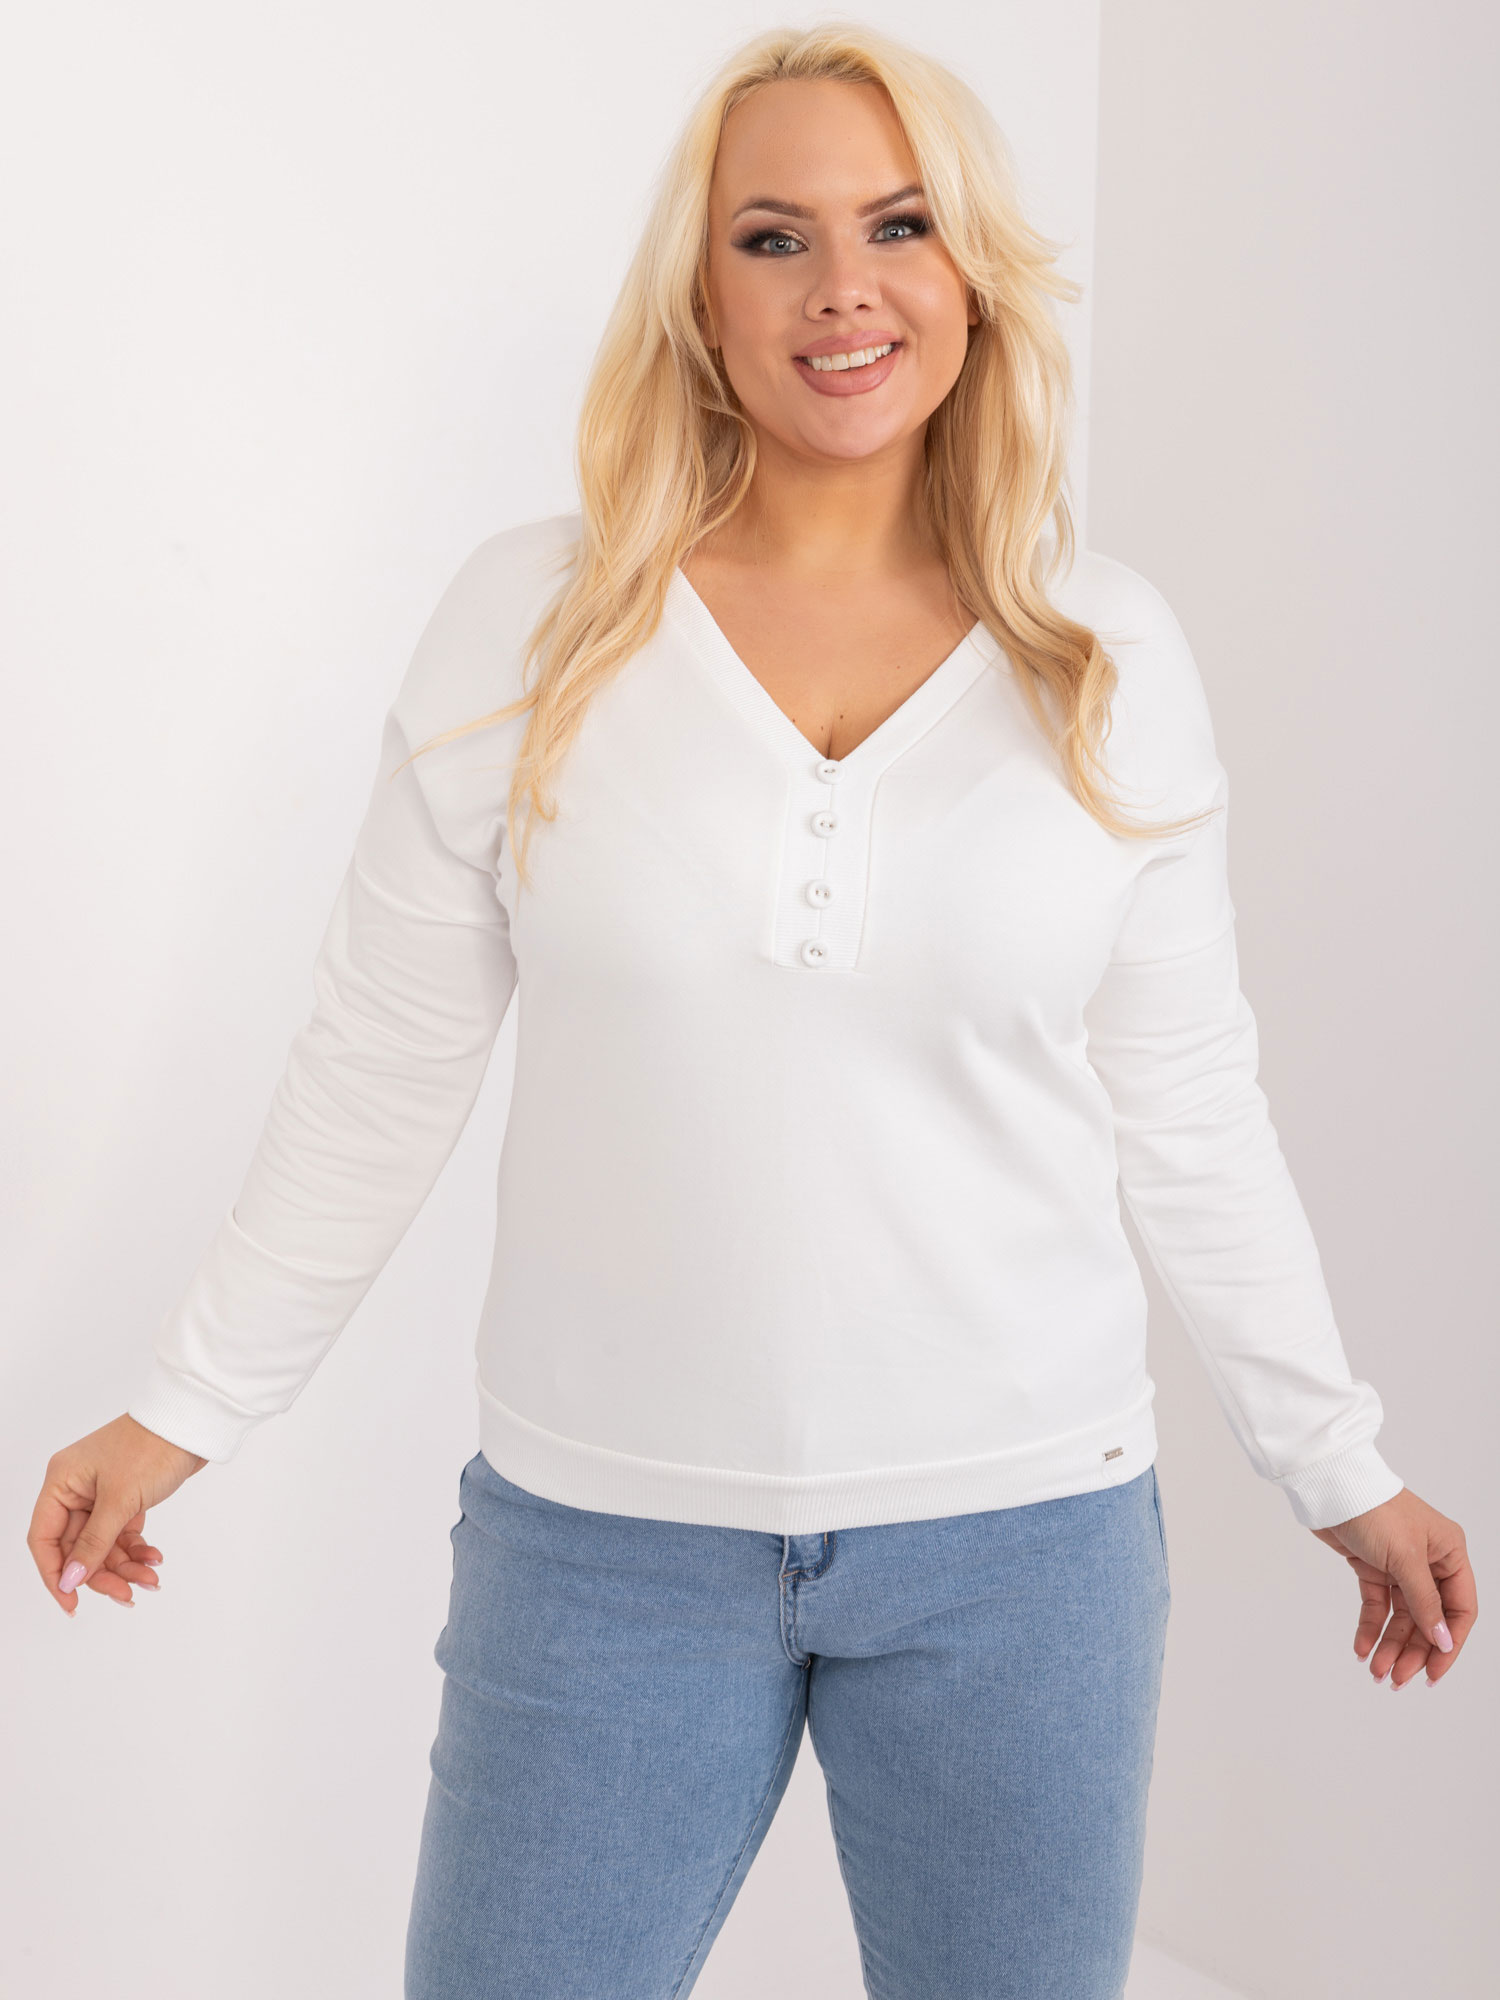 Bílé bavlněné tričko s výstřihem RV-BZ-9241.54-white Velikost: ONE SIZE